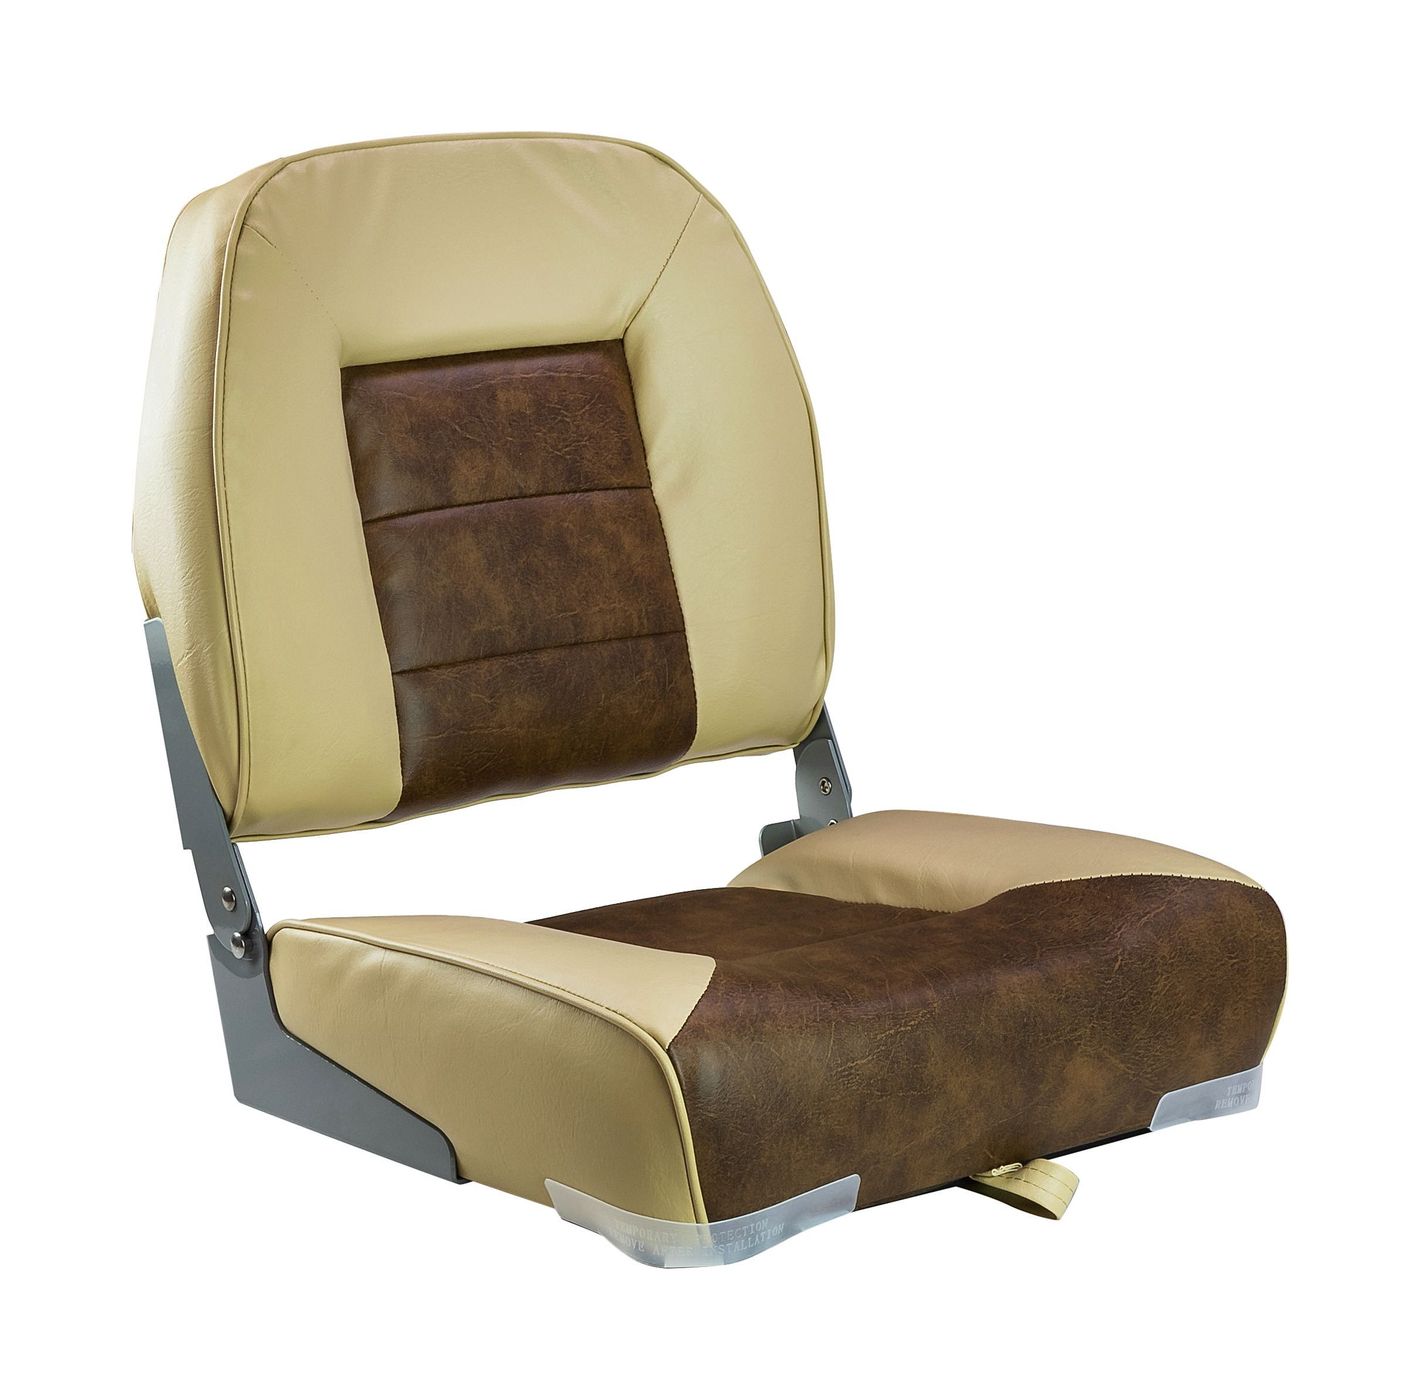 Кресло складное мягкое, обивка винил, цвет песочный/коричневый, Marine Rocket 75121SB-MR папка для документов коричневый